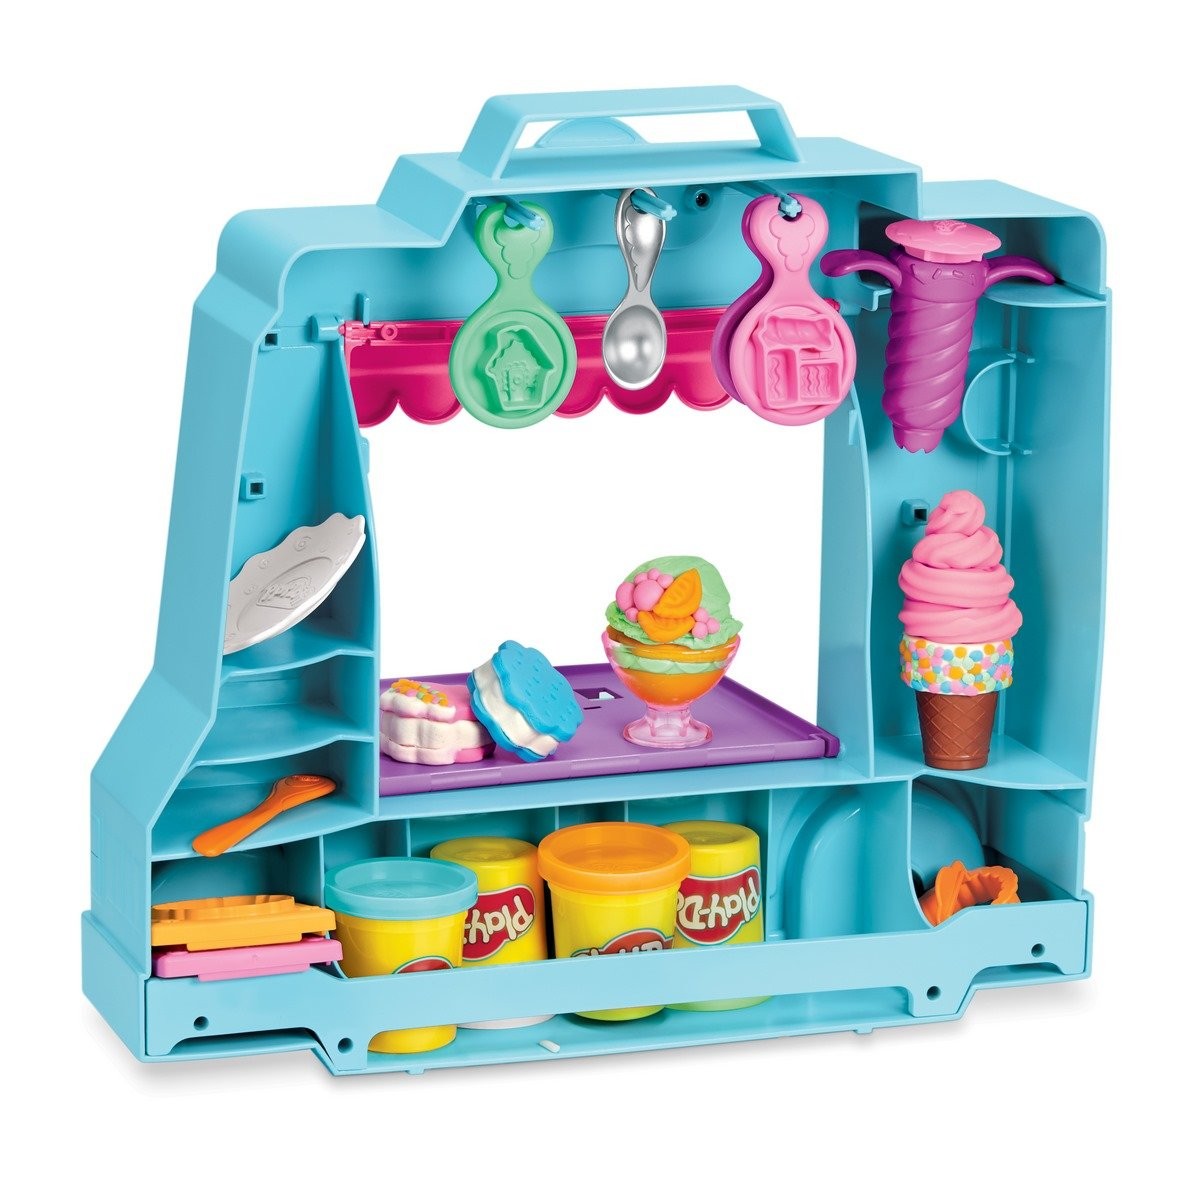 Play-Doh – Pâte à modeler - La chocolaterie - La Grande Récré